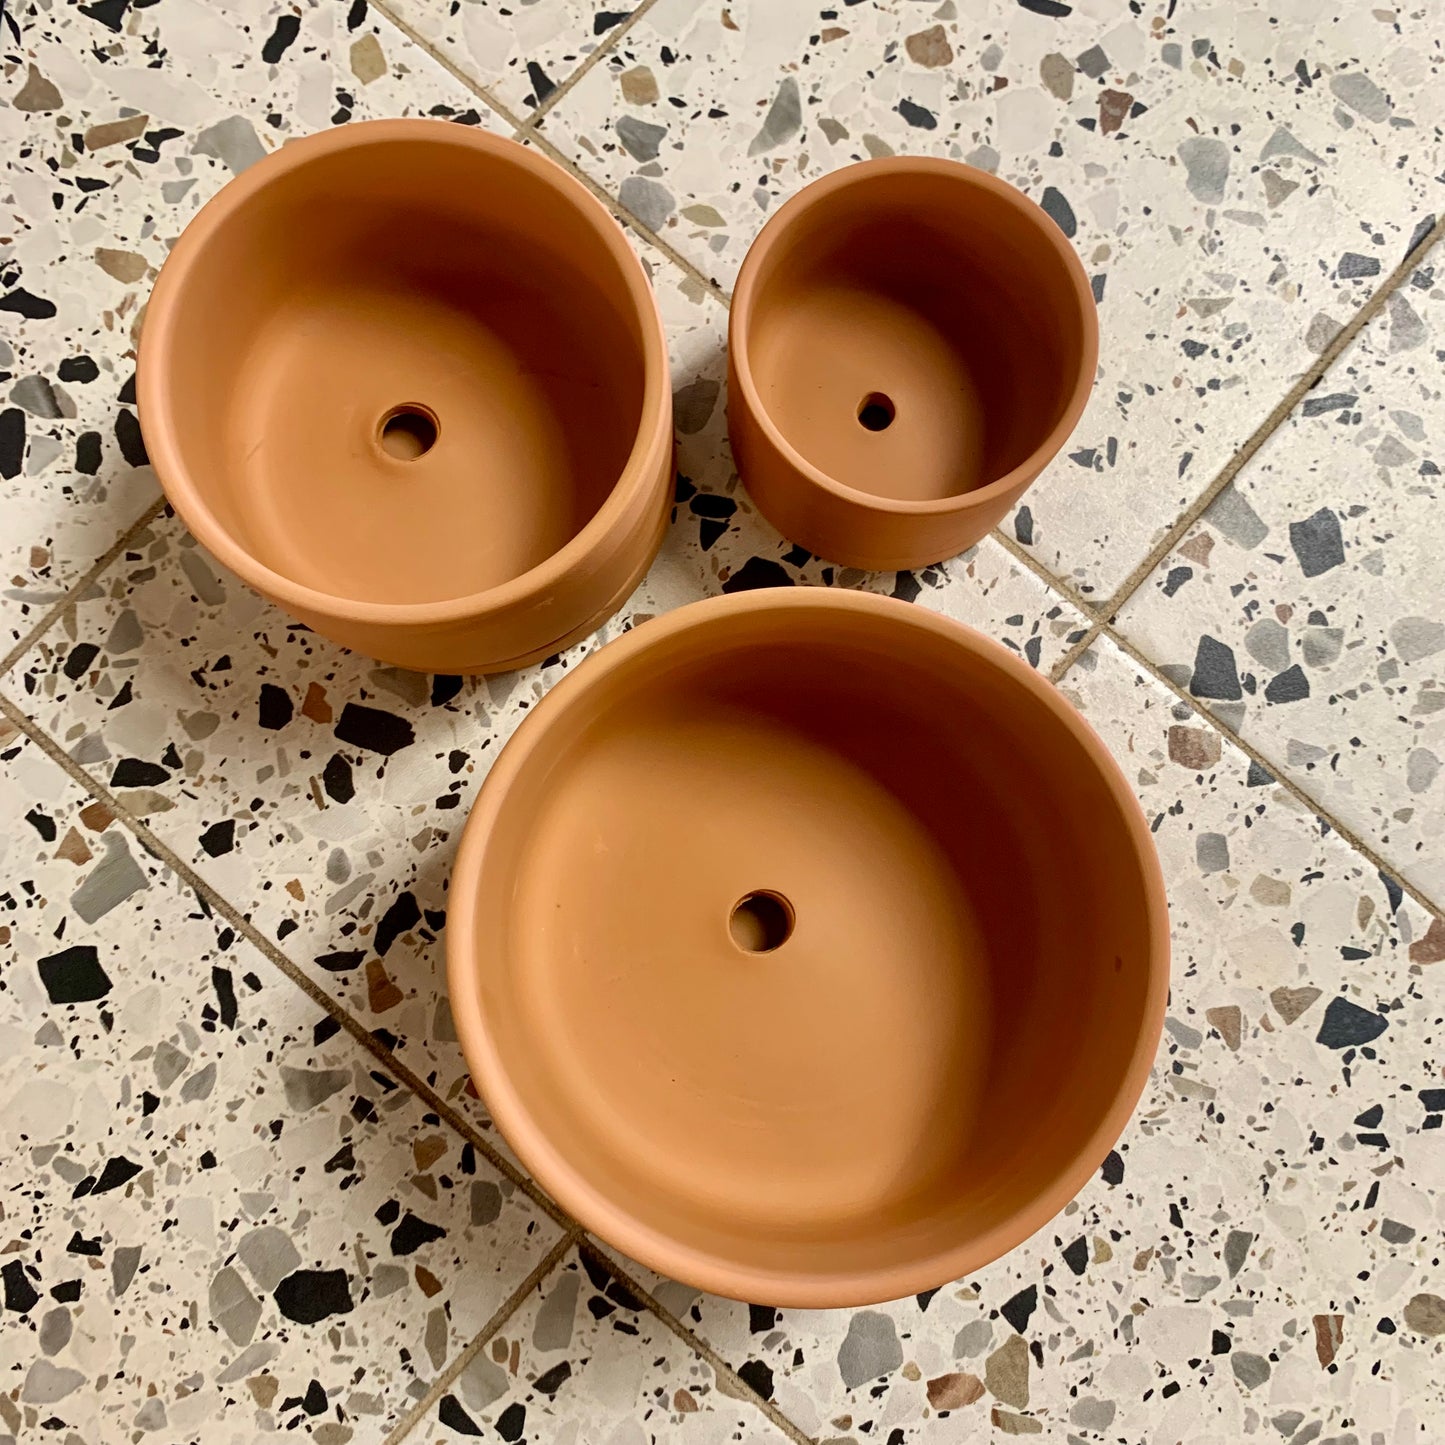 Modern Terracotta Pot